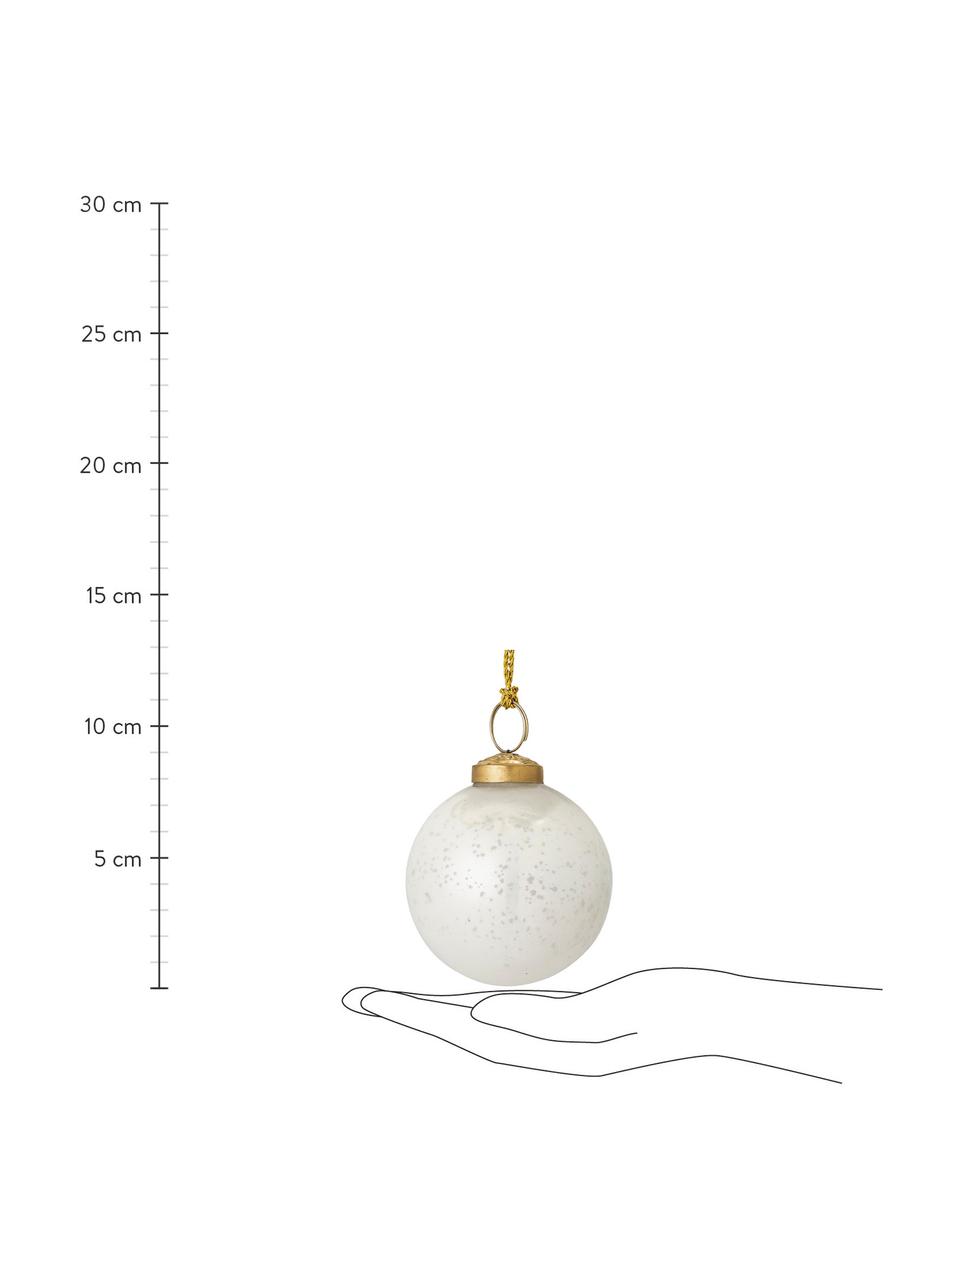 Bolas de Navidad Munay, 2 uds., Blanco brillante, dorado, Ø 8 x Al 8 cm